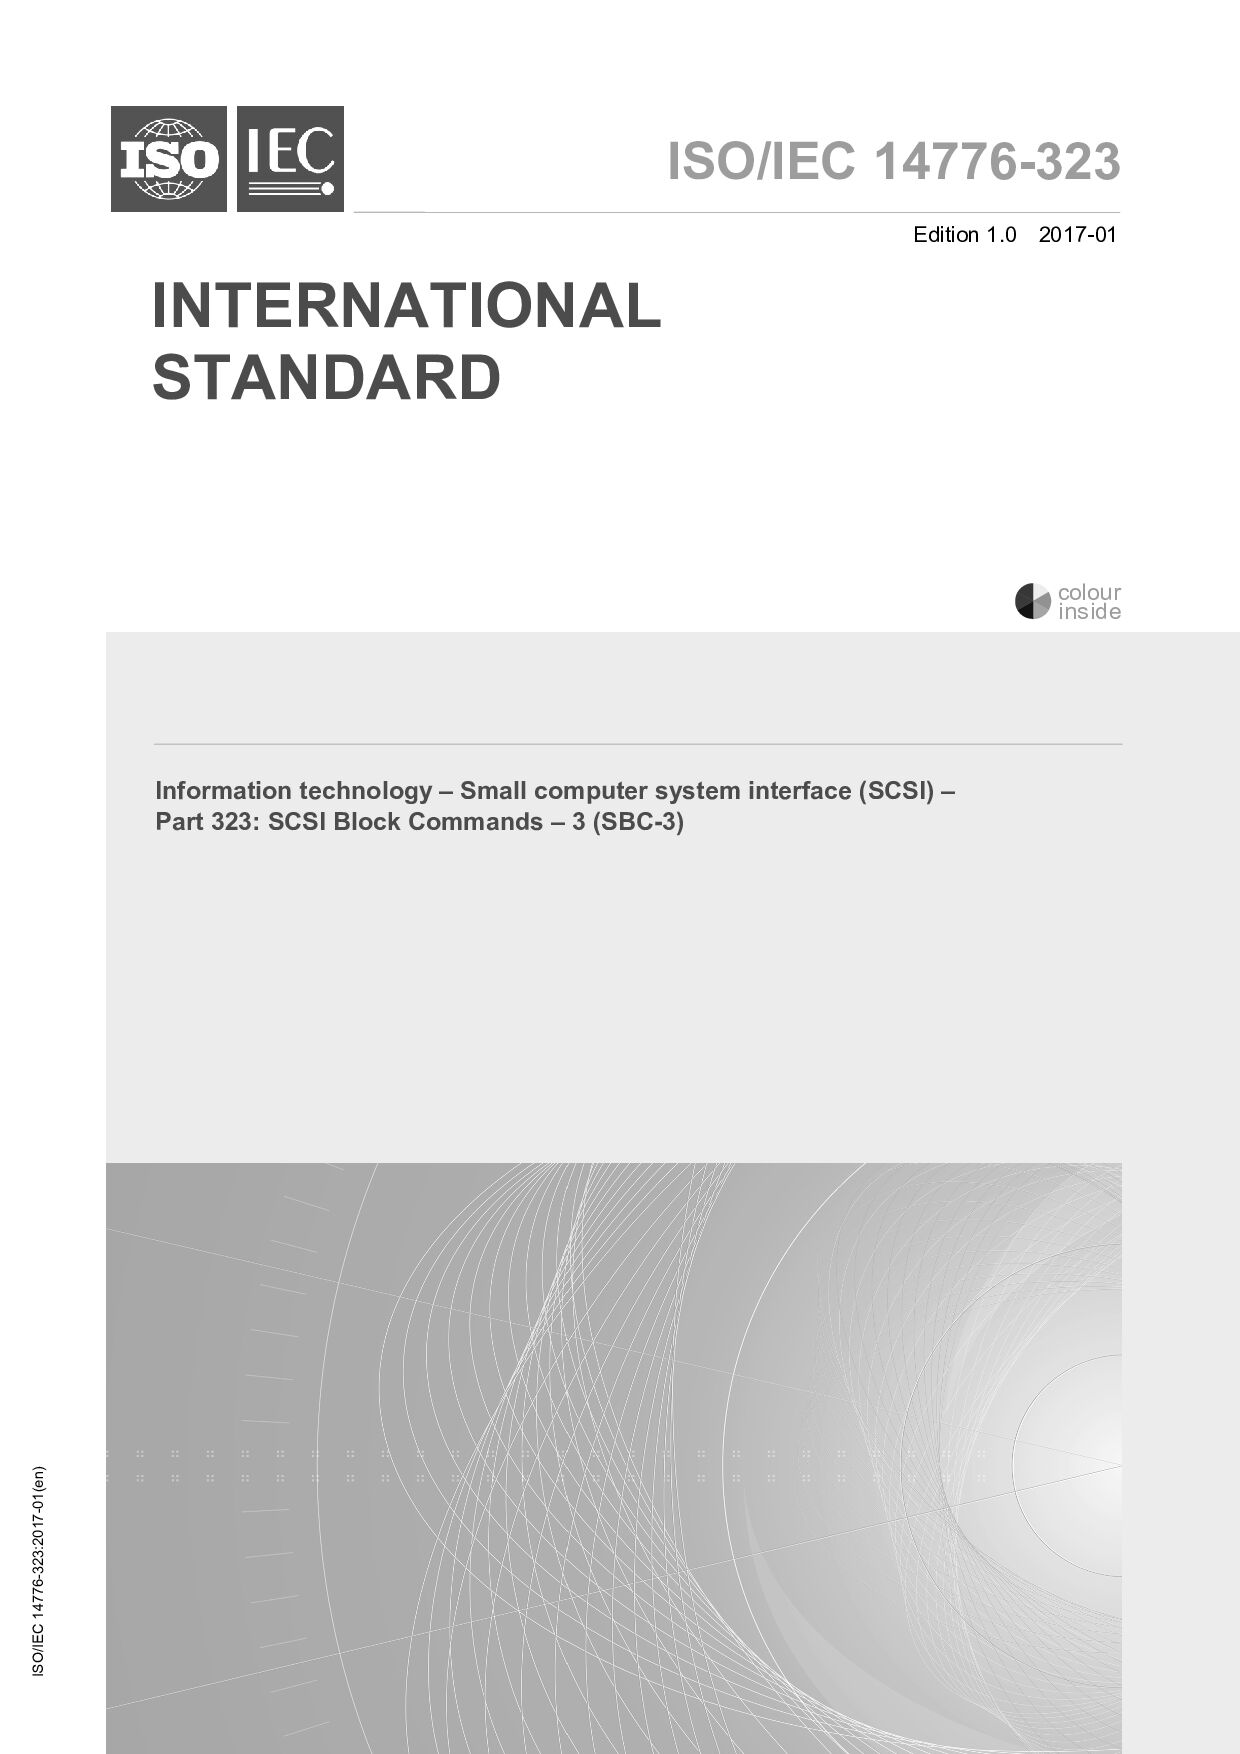 ISO/IEC 14776-323:2017封面图